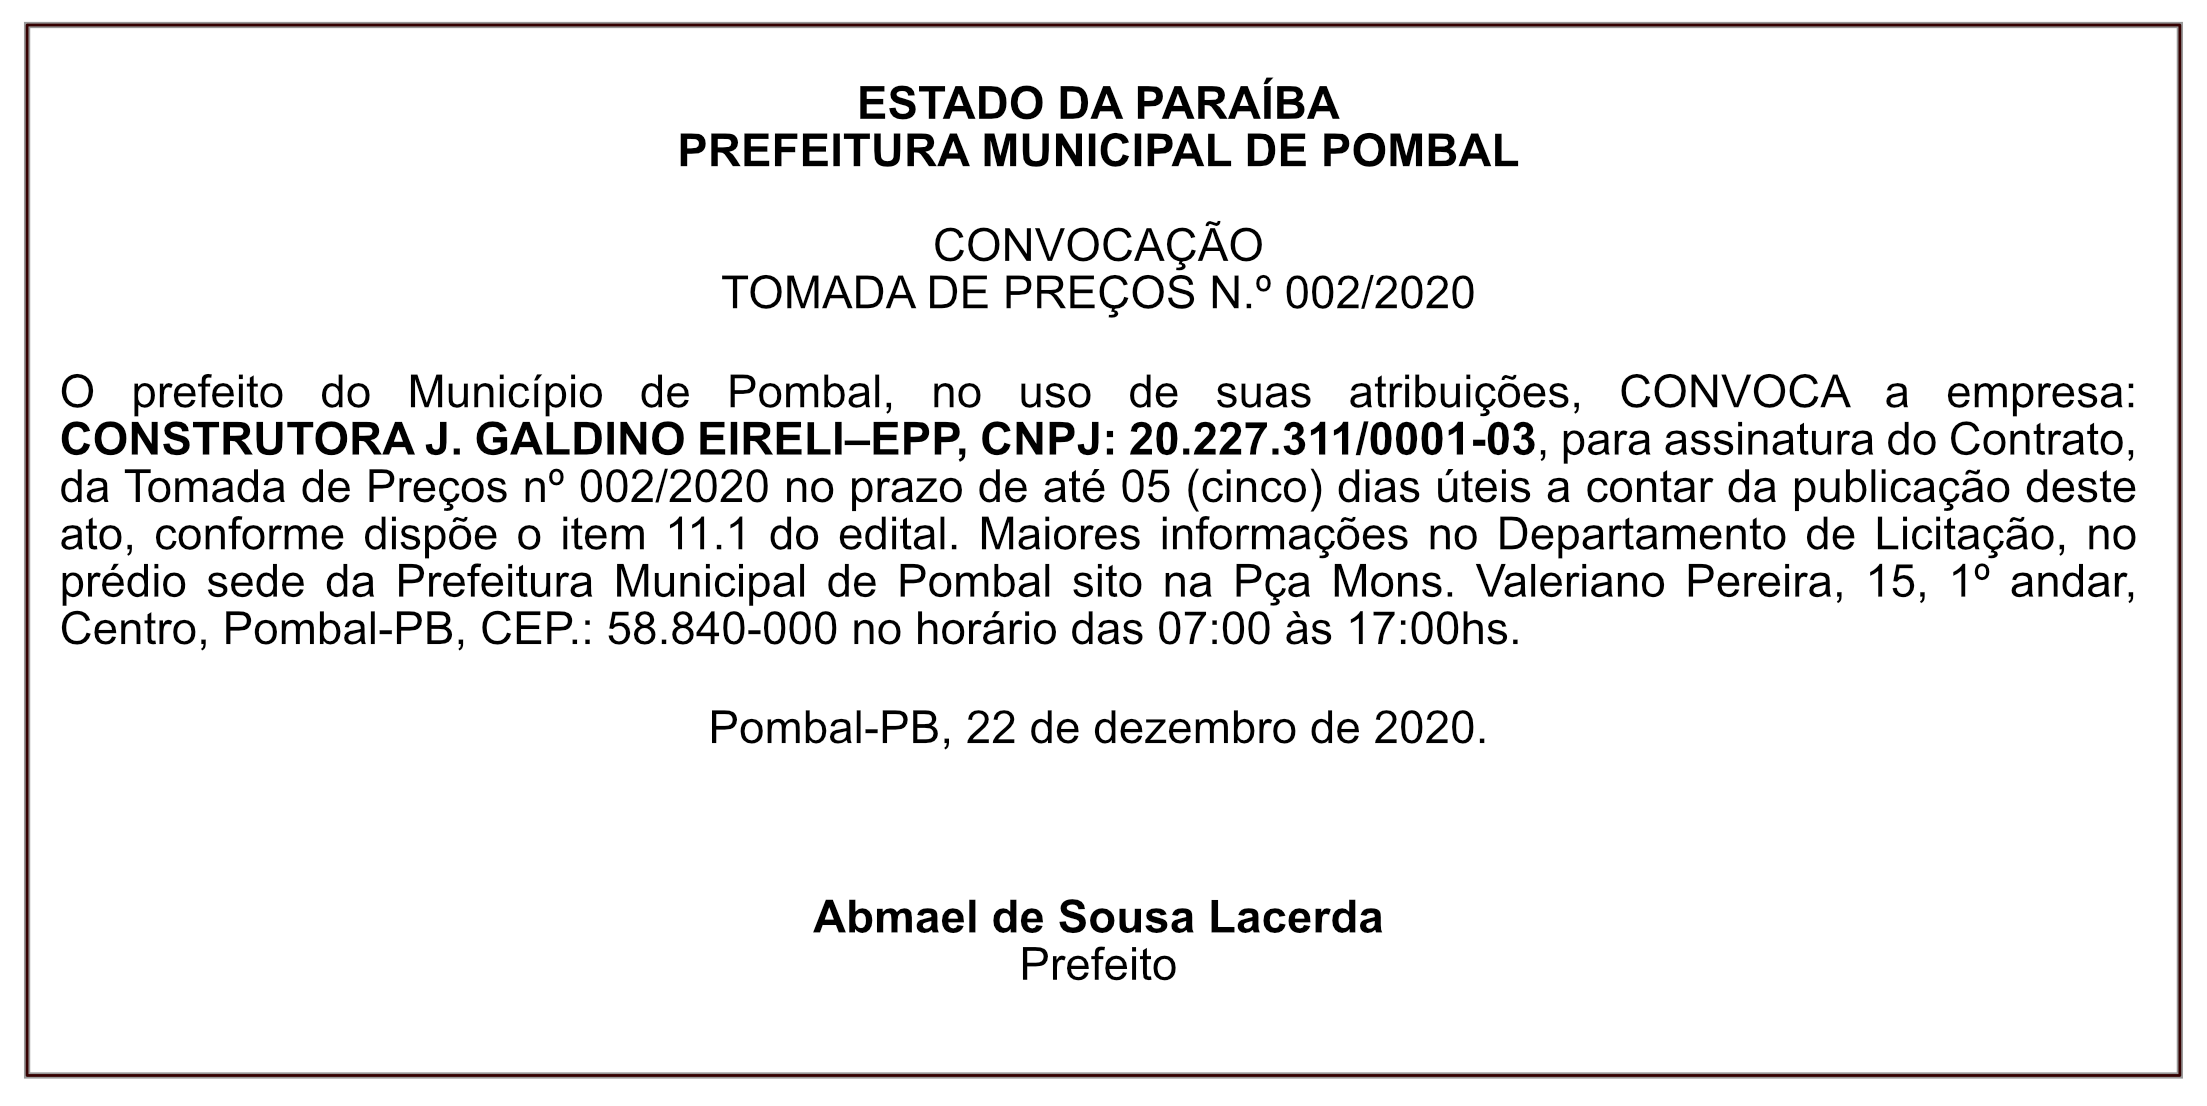 PREFEITURA MUNICIPAL DE POMBAL – CONVOCAÇÃO – TOMADA DE PREÇOS N.º 002/2020